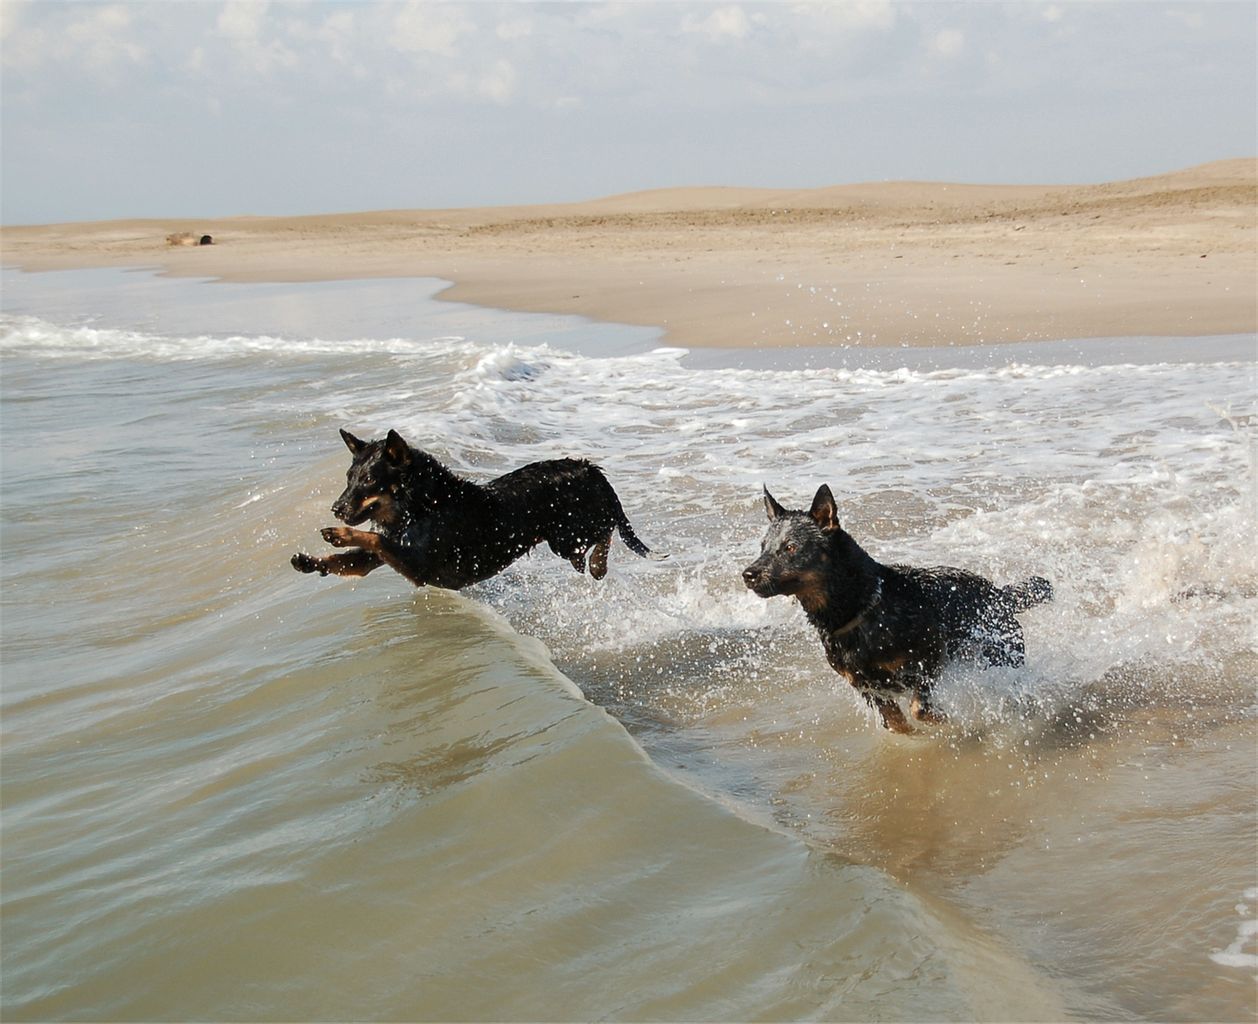 Photo: Australia pastor canes currere natare